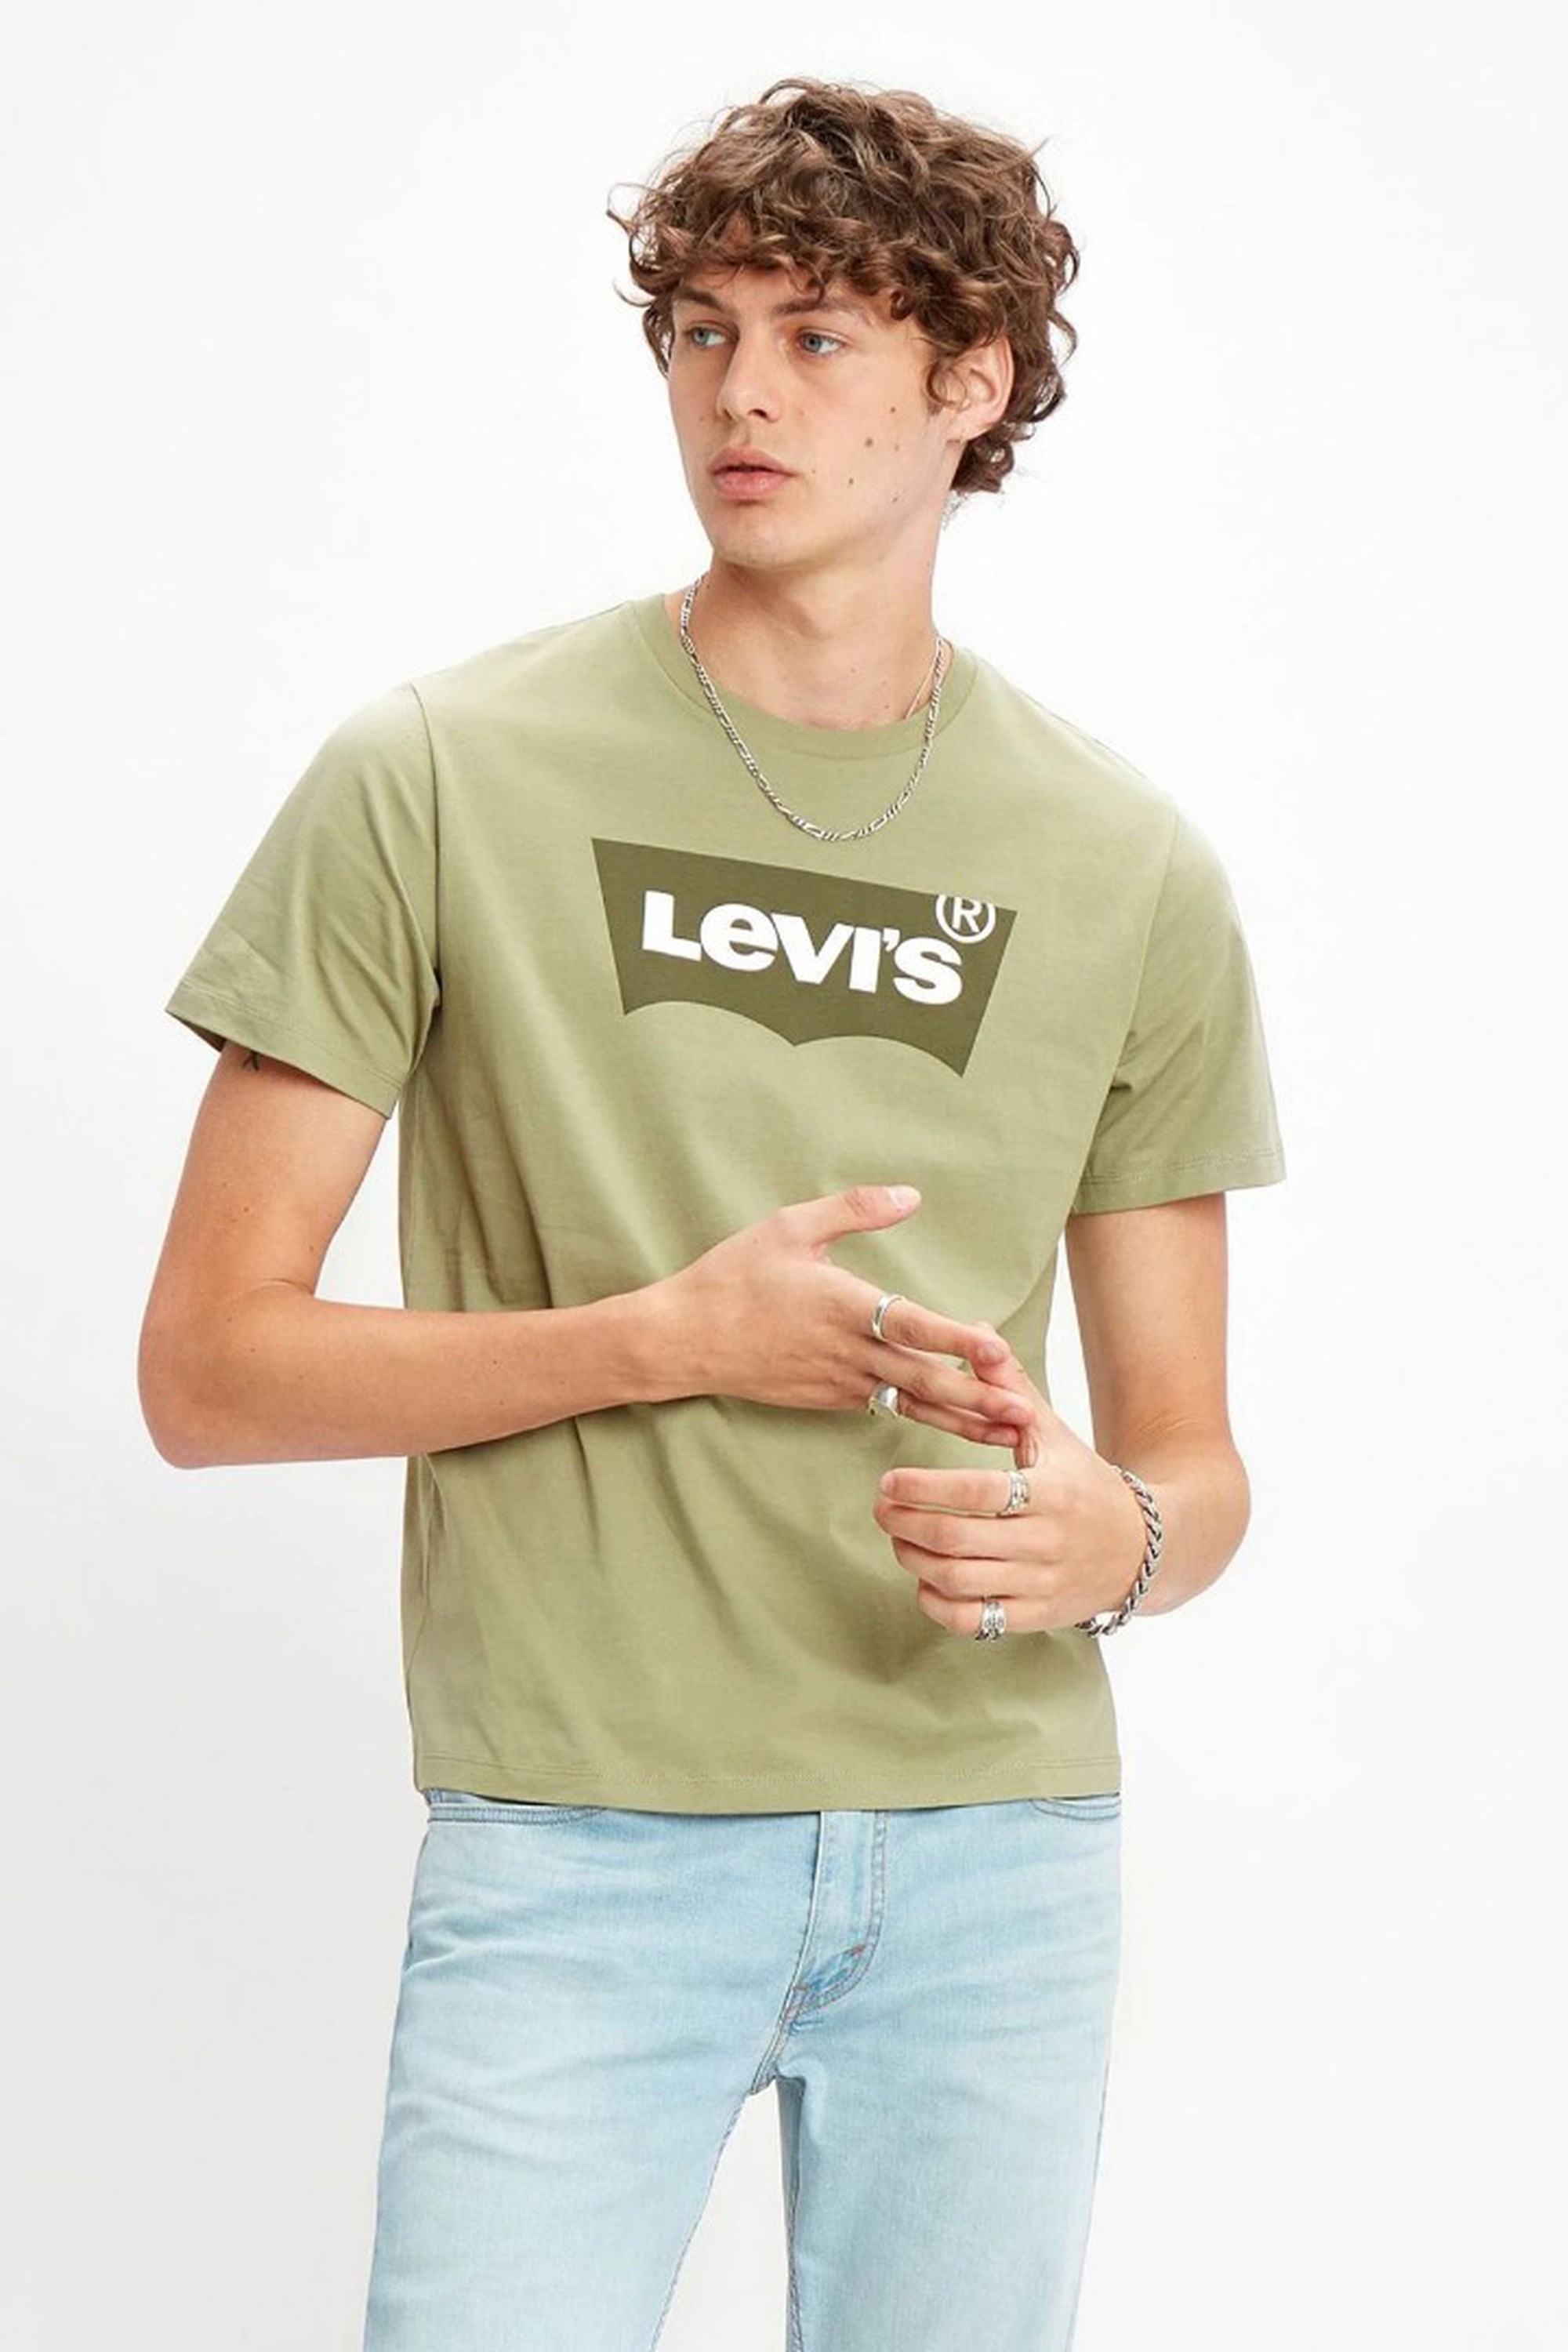 Купить футболку levis. Футболка Levis мужская хаки. Левис футболки Левис. Майка левайс мужские. Футболка левайс зеленая.